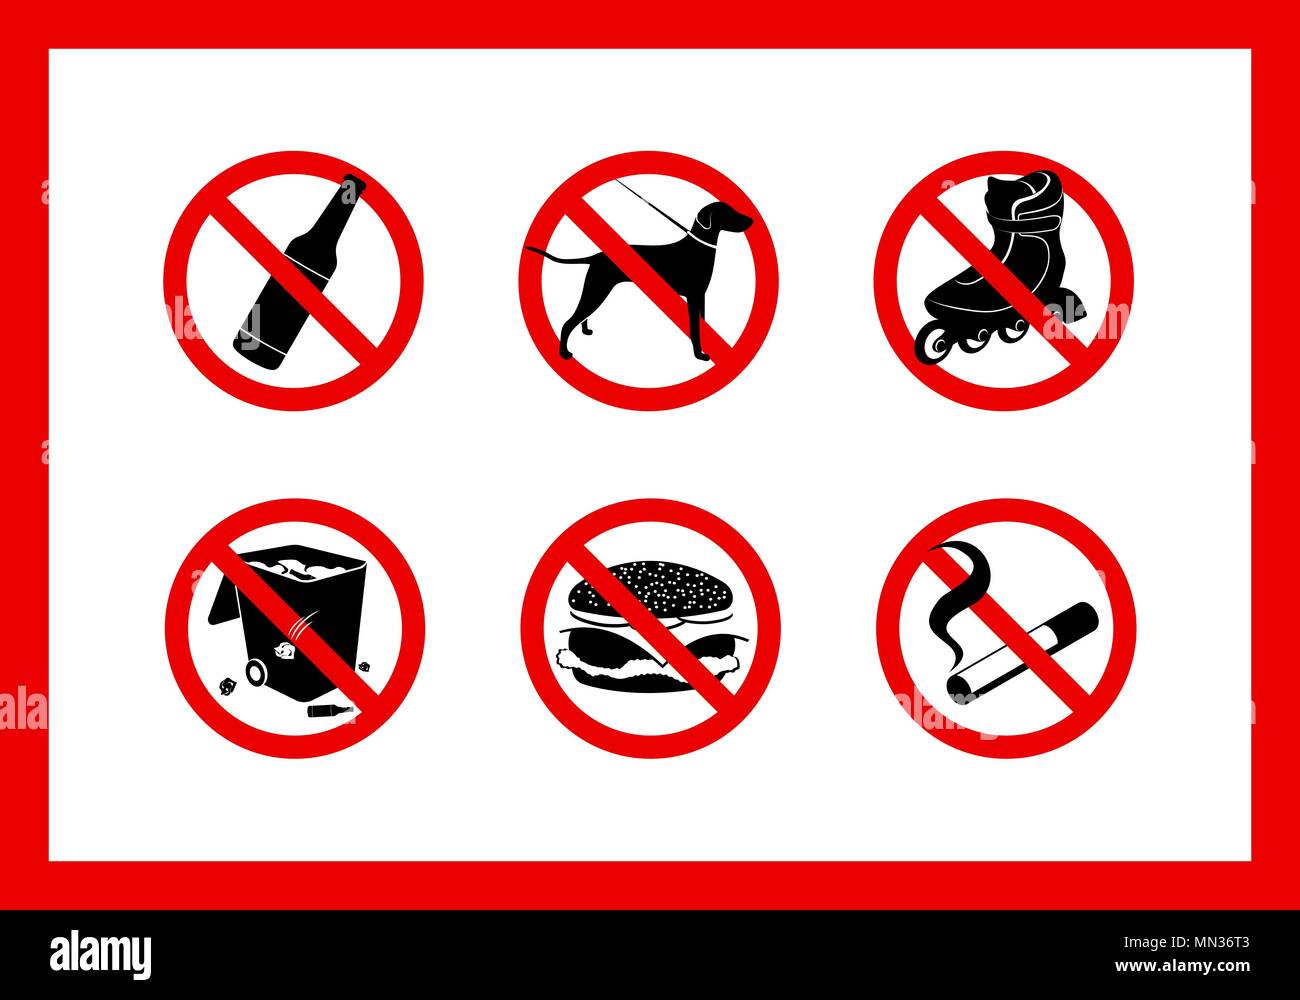 Runde rote Schilder Verbot zu Fuß von Hunden, über das Trinken Spirituosen, auf ihre eigene Nahrung bringen, zum Skaten, für Abfall, für das Rauchen Stock Vektor